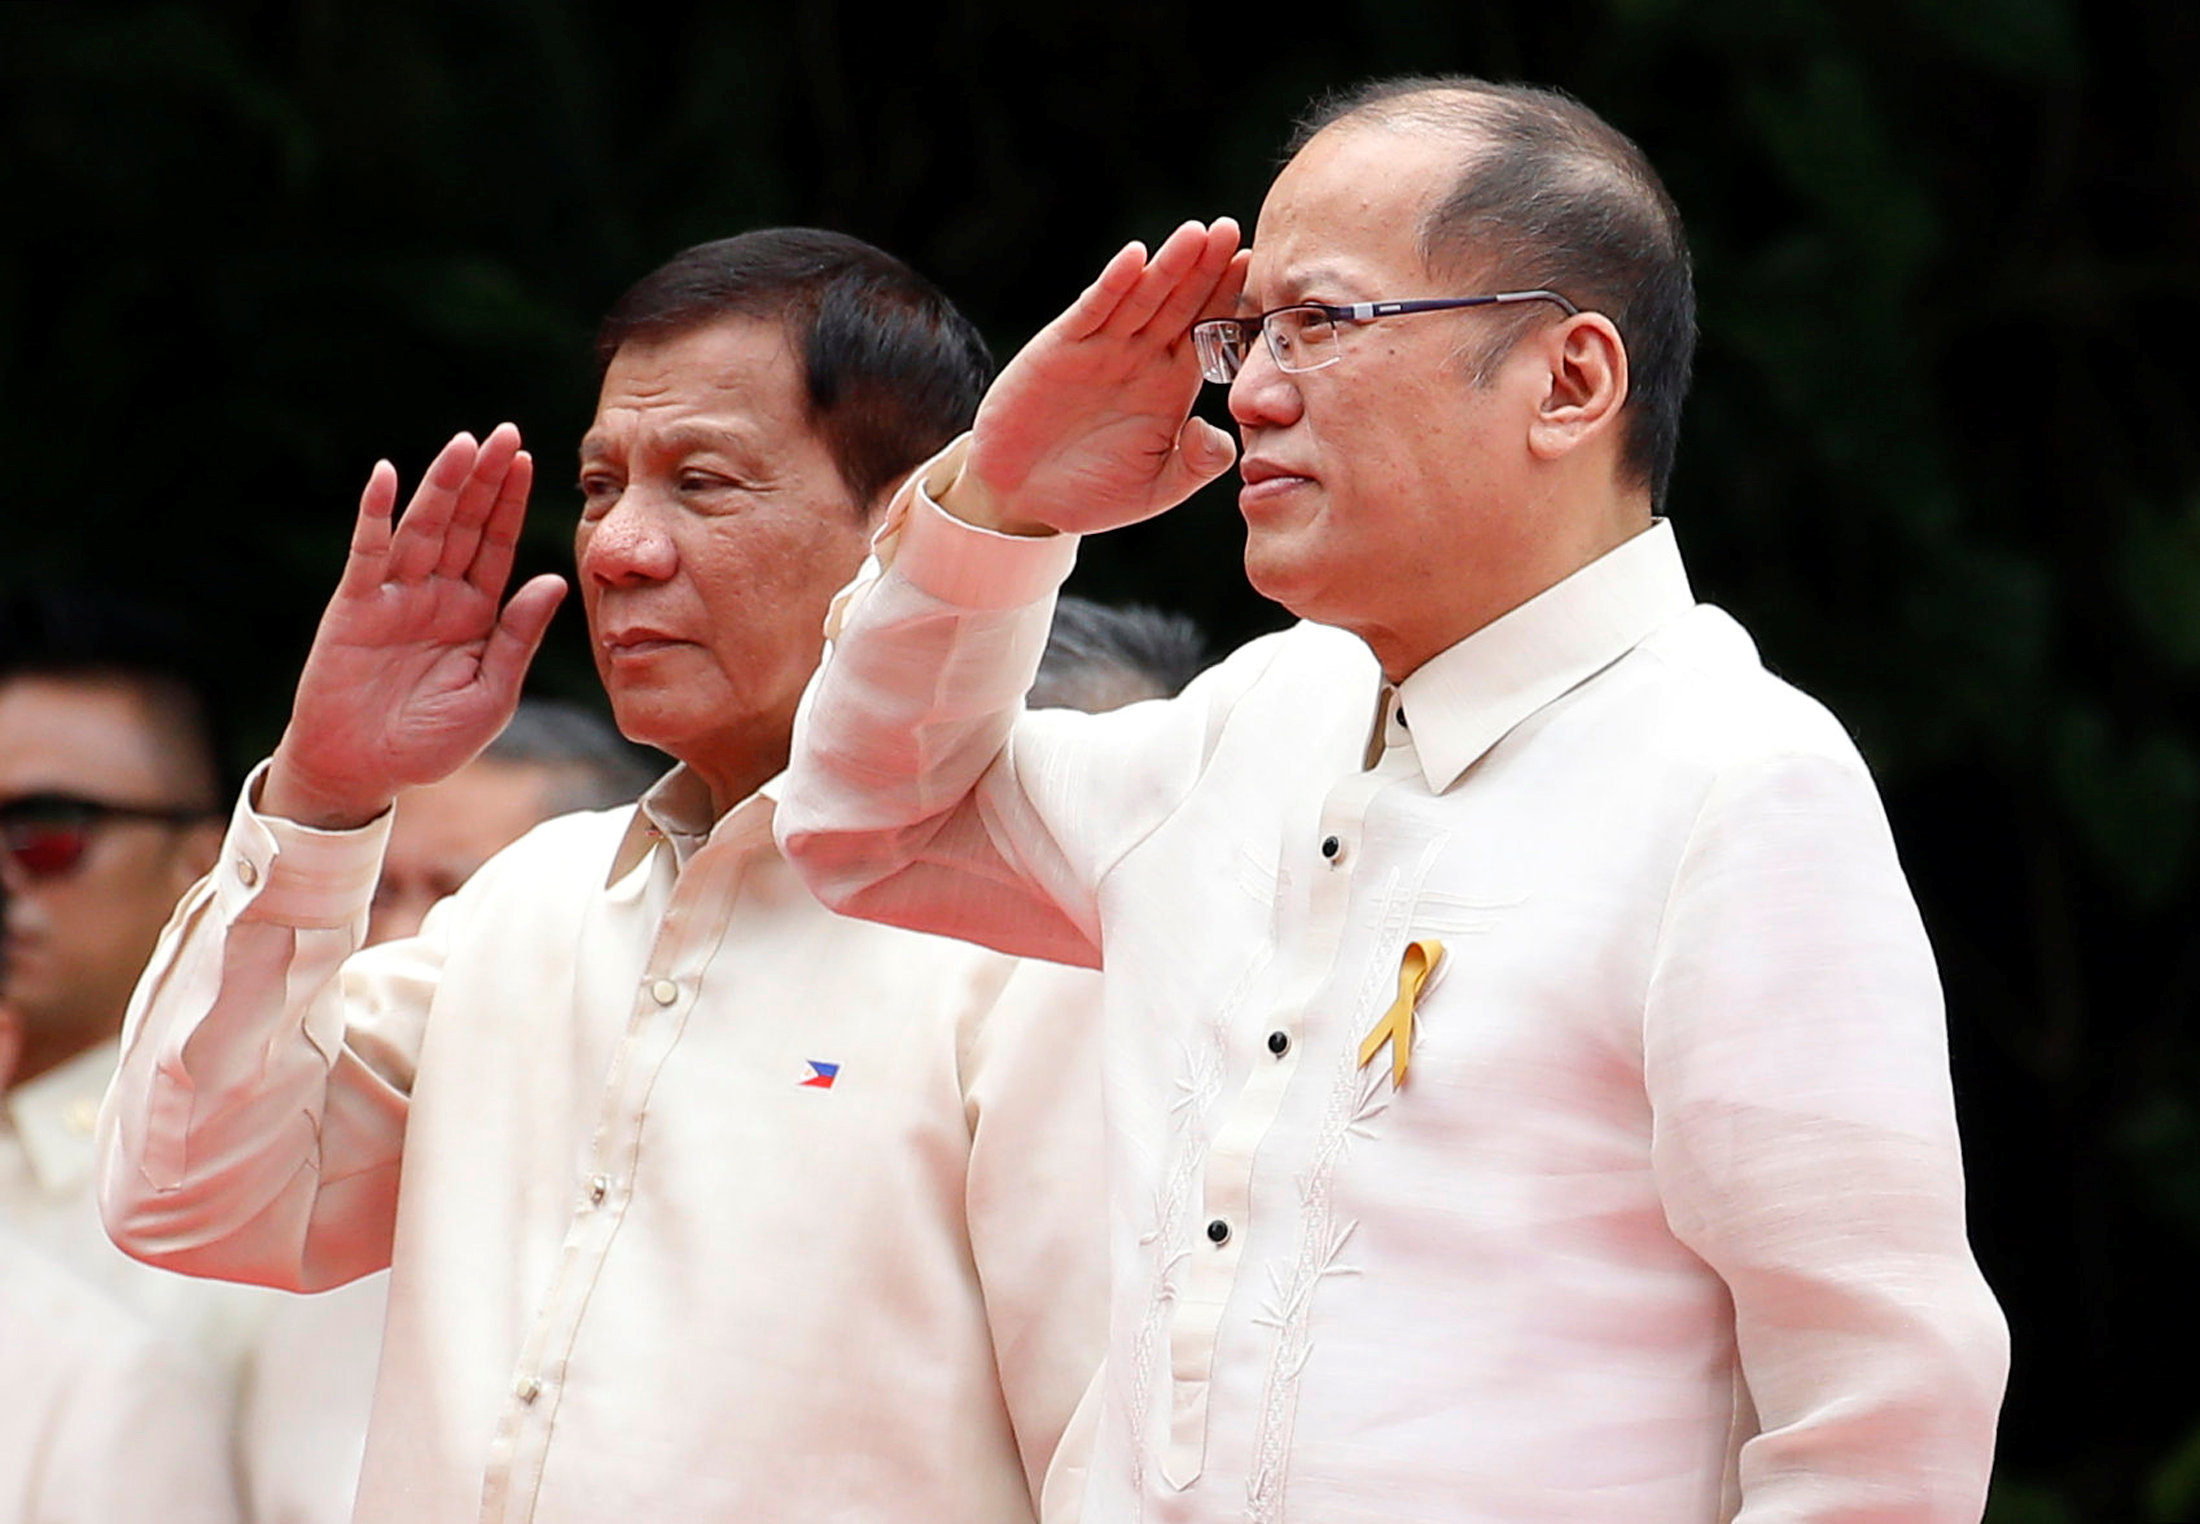 Philippines' Duterte sworn as president, rails against crime